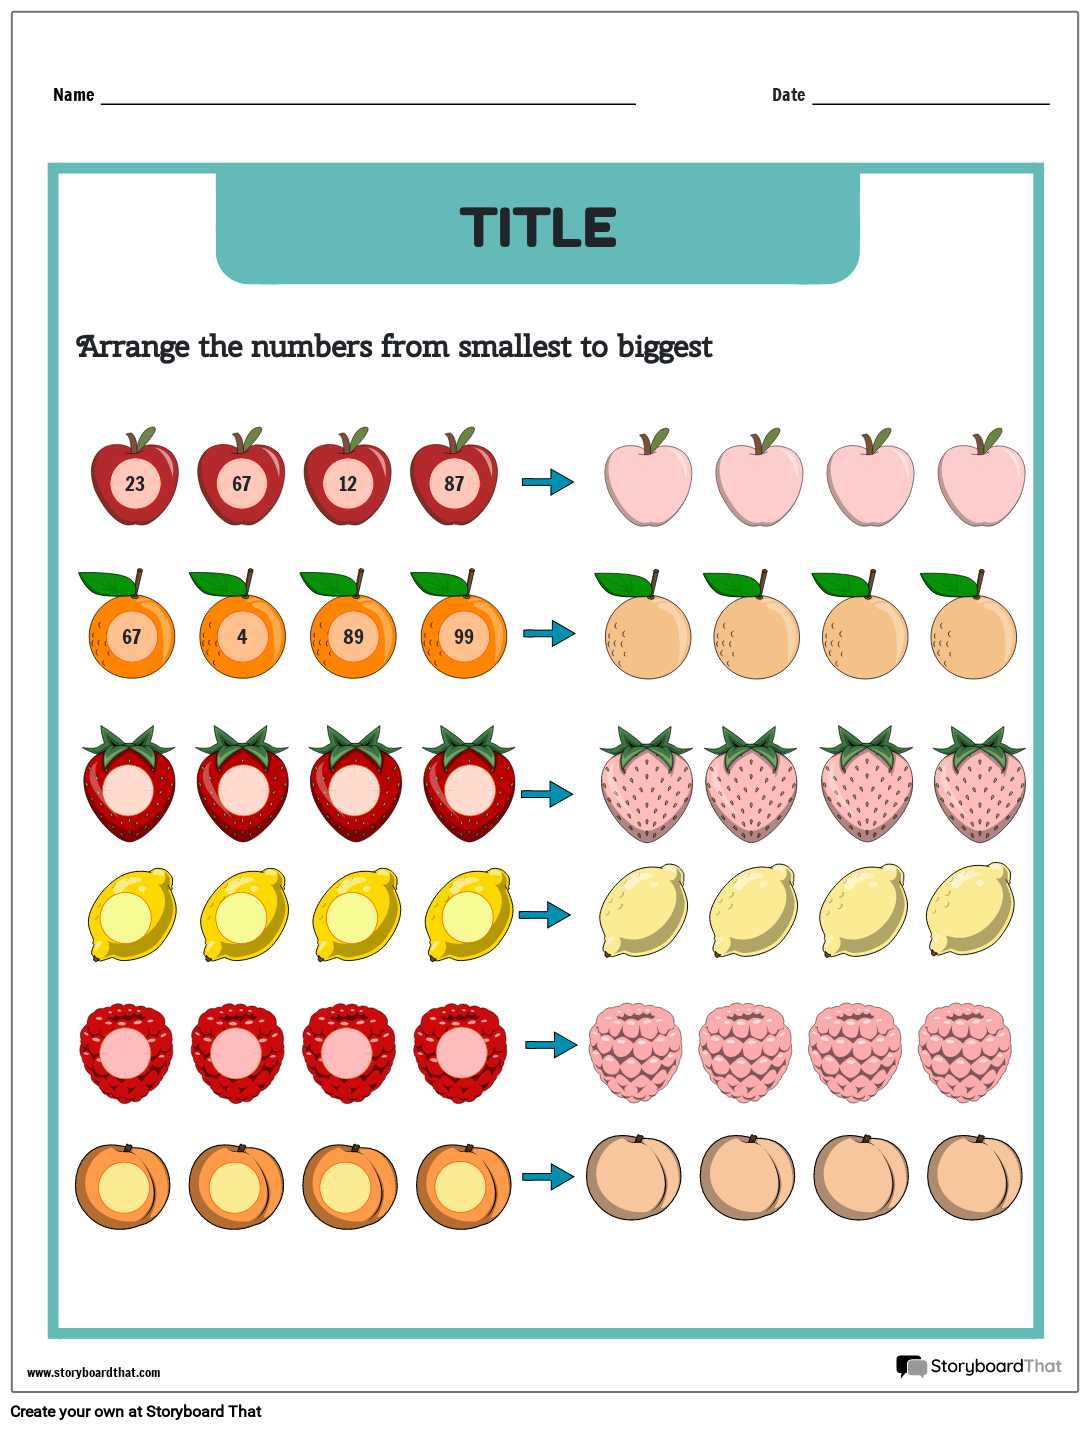 Fruit-themed Ordering Numbers Worksheet